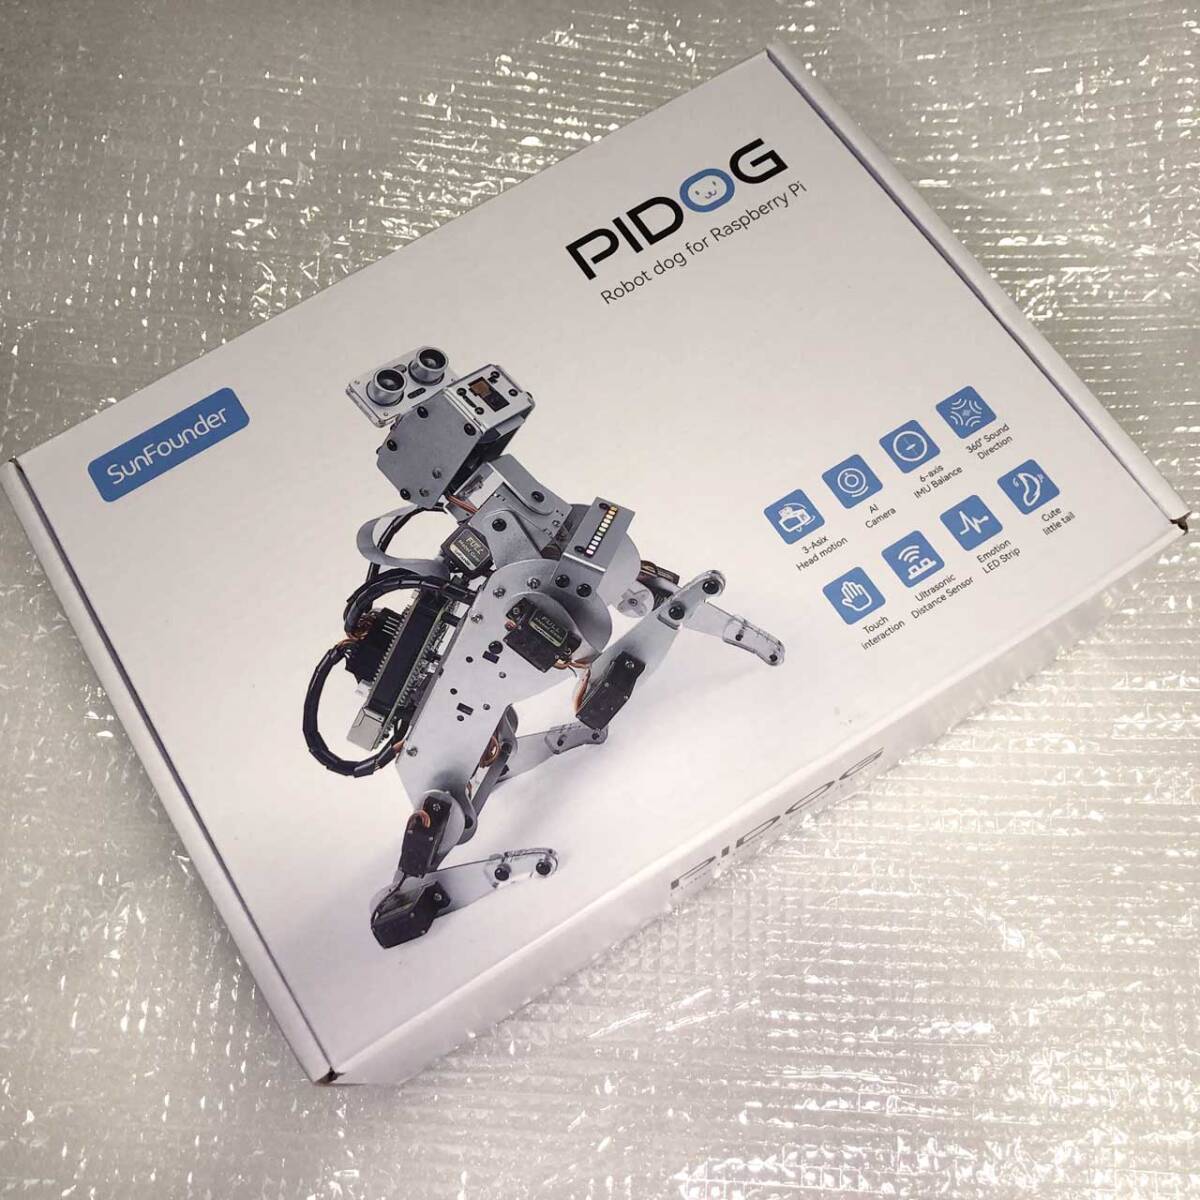 【未使用現状渡し】PiDOG AIロボット犬の電子工作キット 開封のみ品　Raspberry Piは別途必要 SunFounder製_画像1